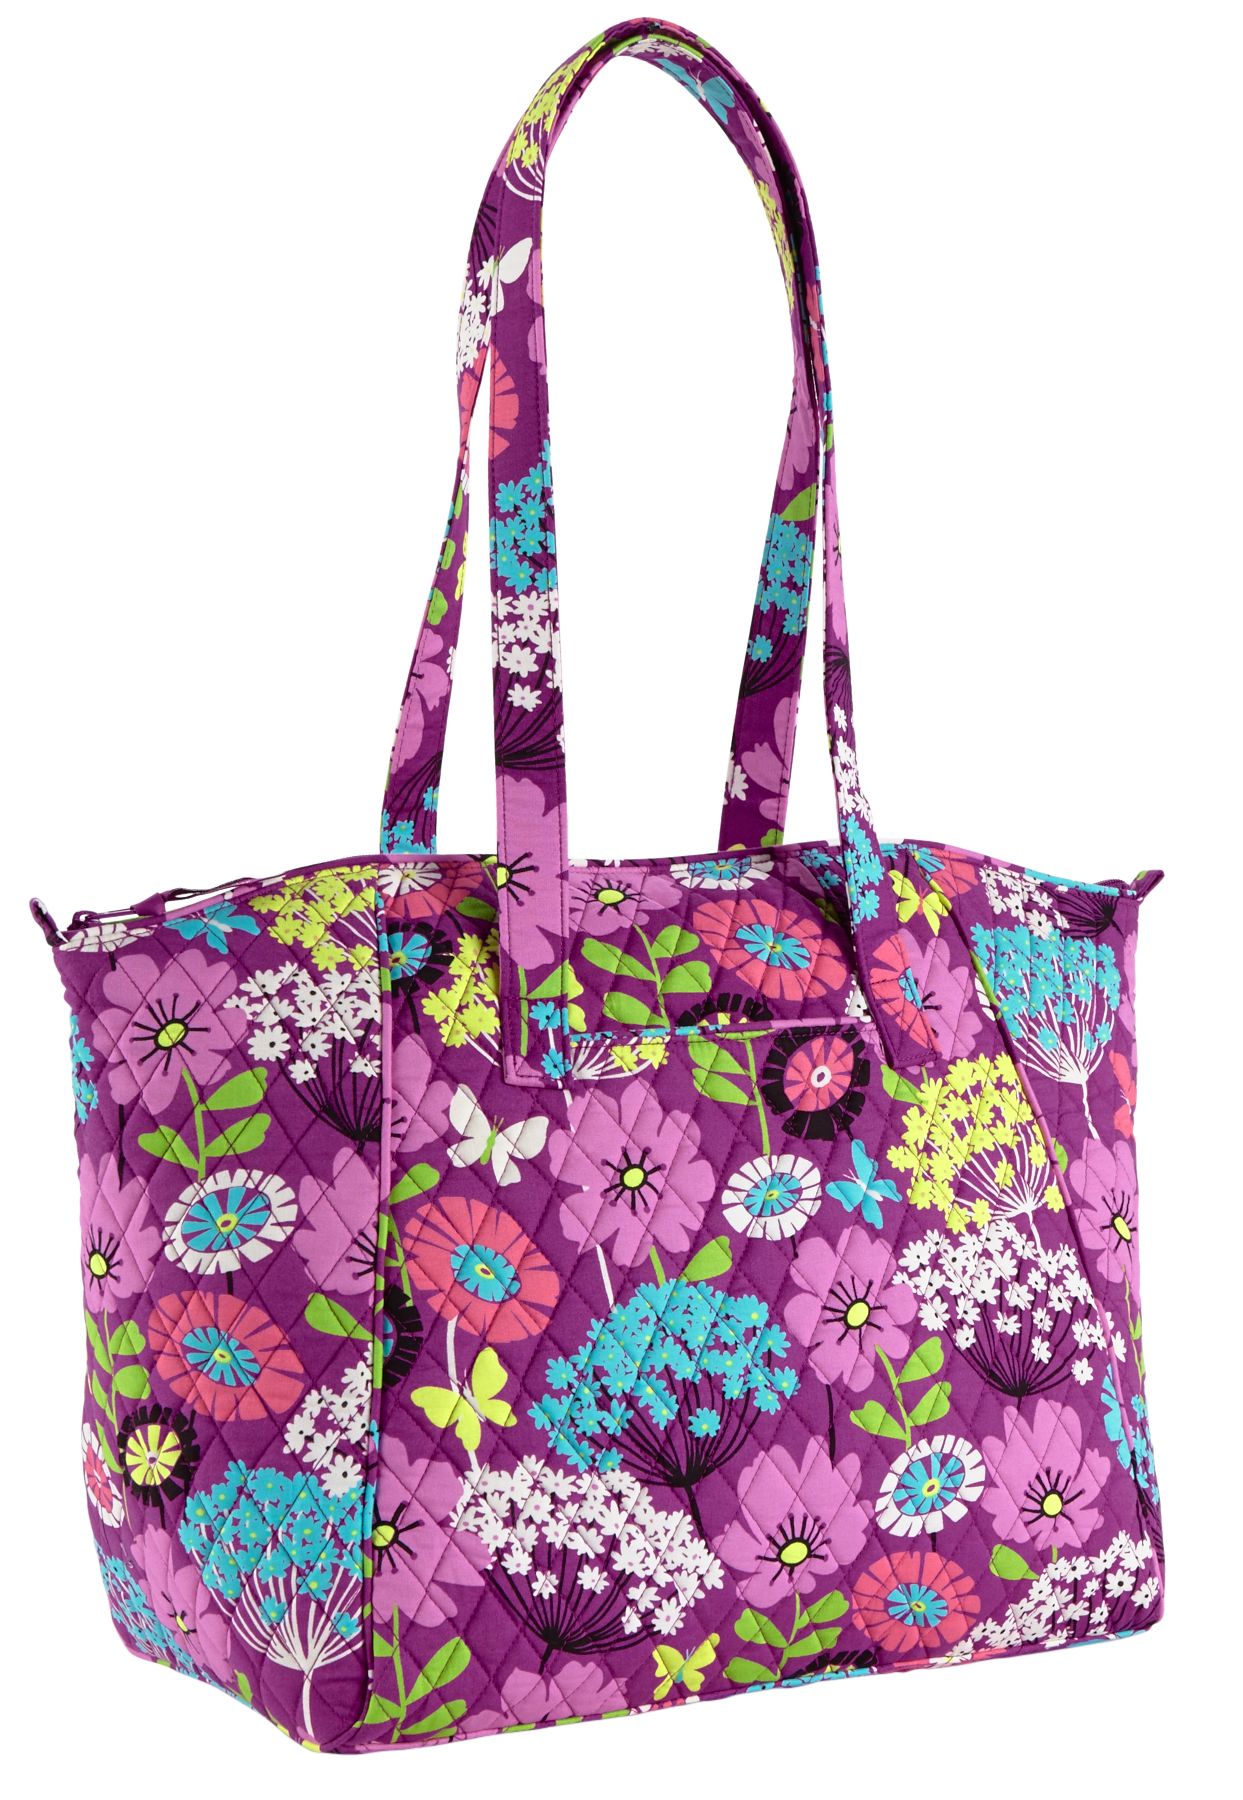 Vera Bradley Travel Tote Bag Travel Bag | eBay